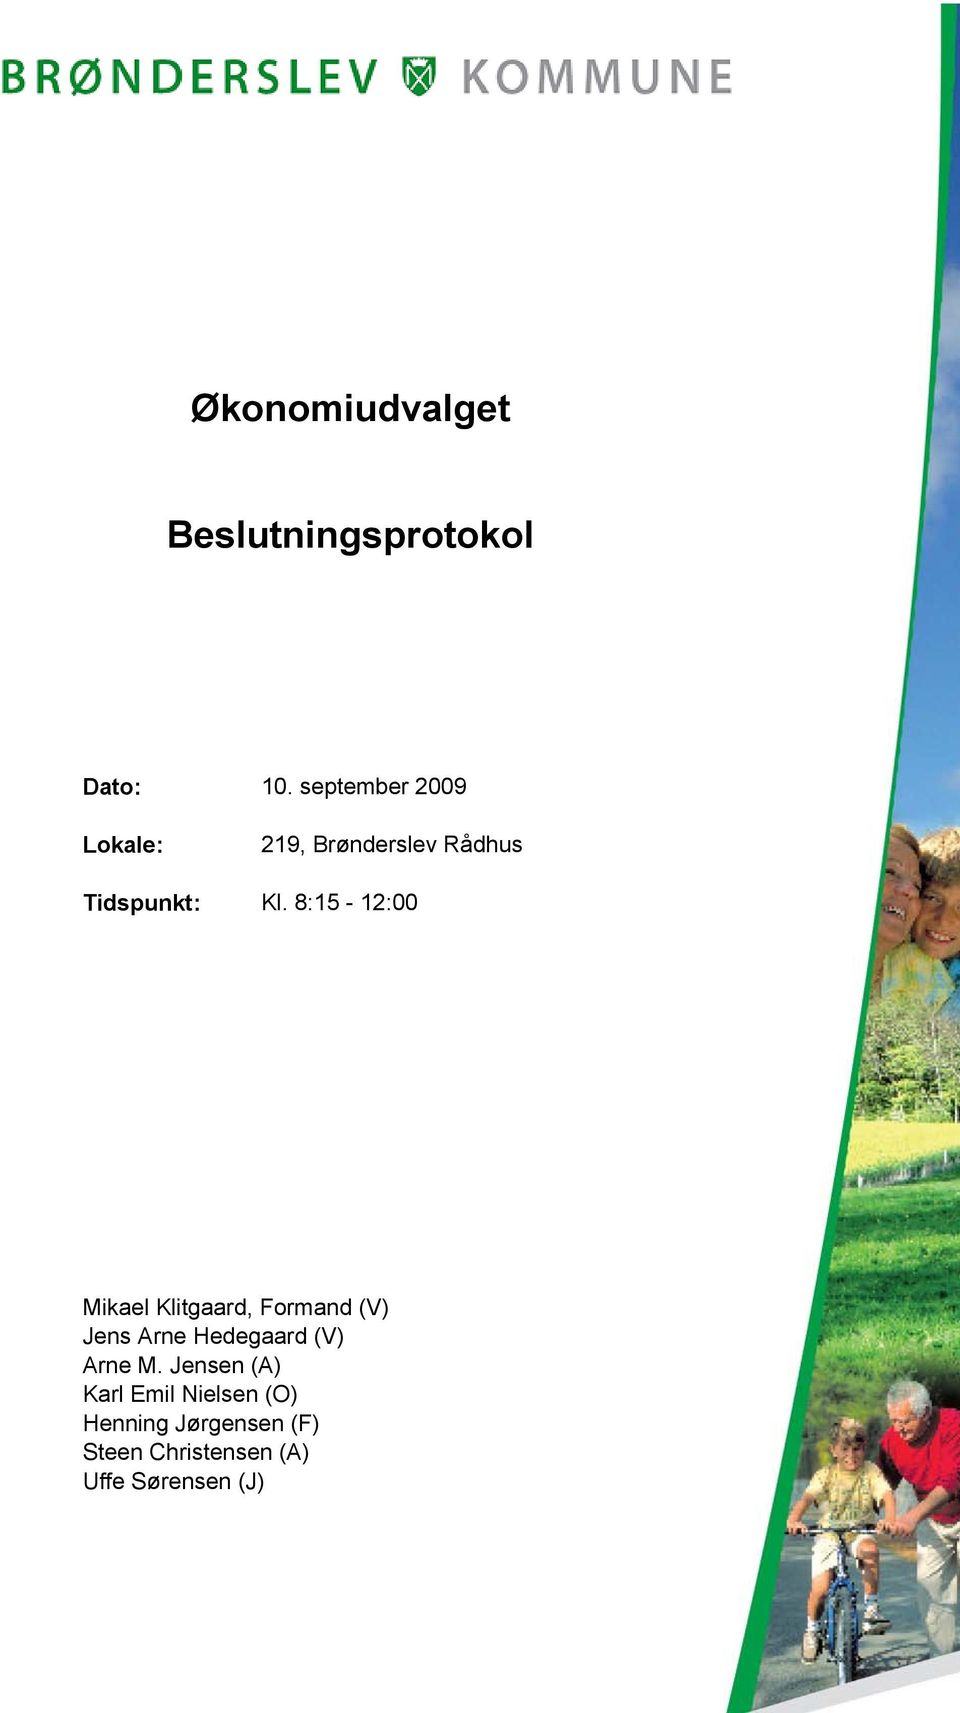 8:15-12:00 Mikael Klitgaard, Formand (V) Jens Arne Hedegaard (V)